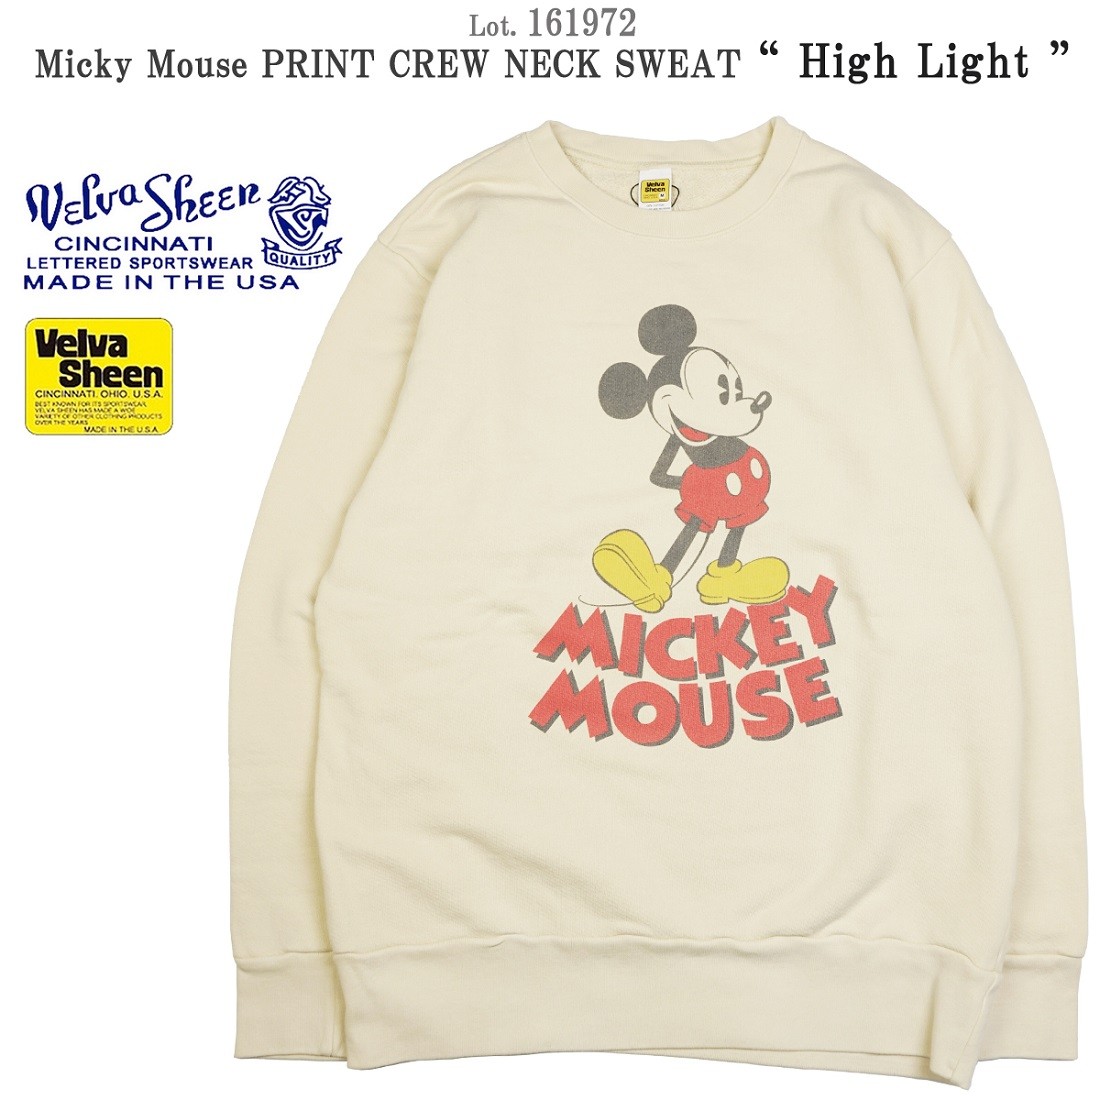 ベルバシーン 161972 日本限定 Micky Mouse “High Light”ミッキー